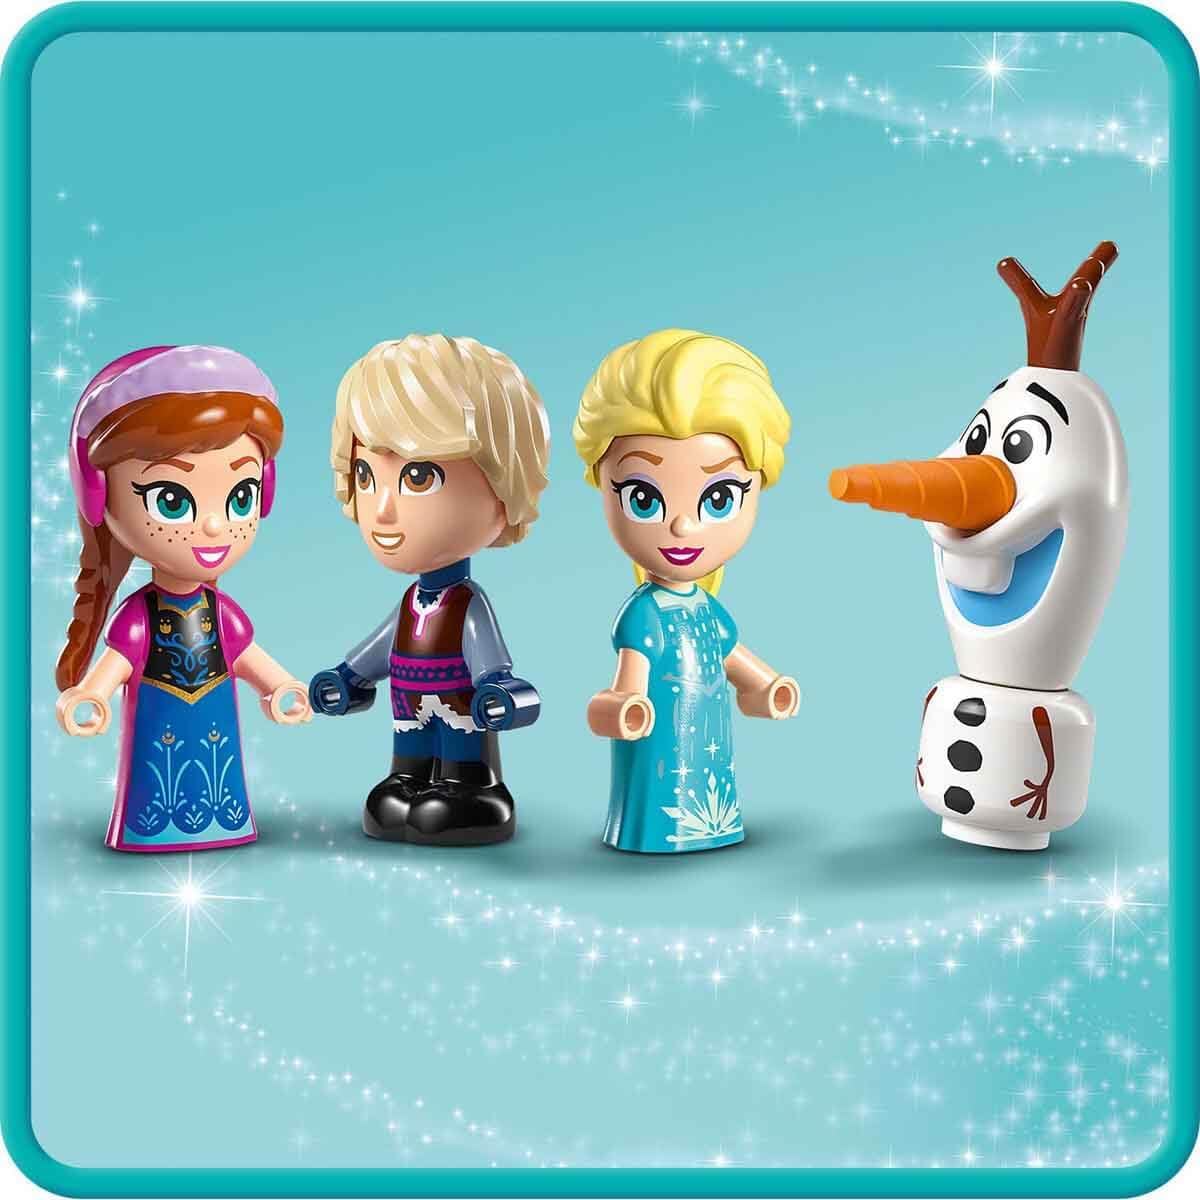 LEGO Disney - Princess Anna and Elsa Merry-Go-Land 43218